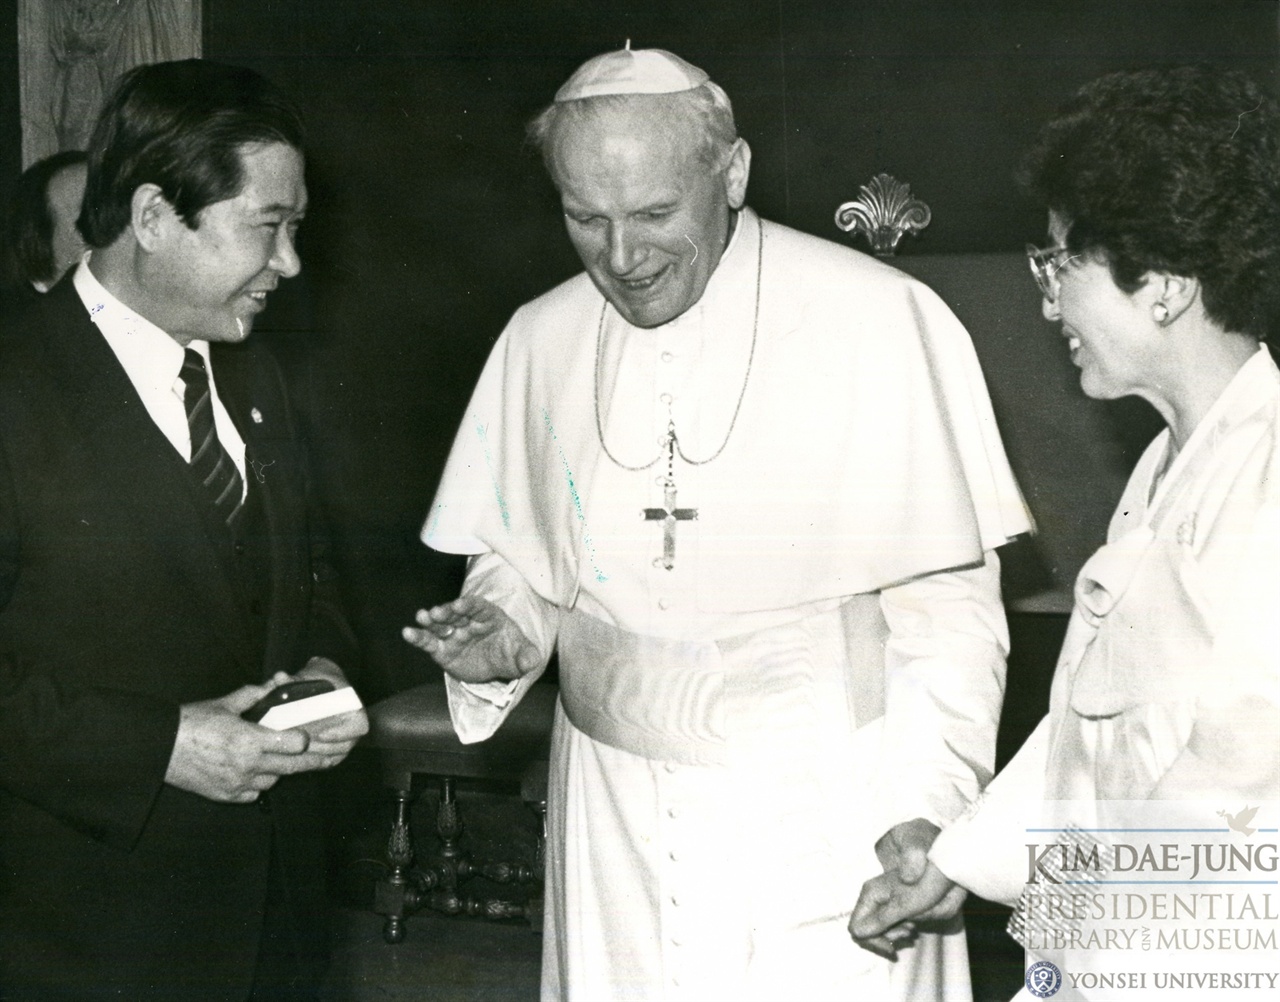 1989년 김대중 당시 평민당 총재가 교황청에 방문해서 교황 요한 바오로2세를 알현할 때의 모습